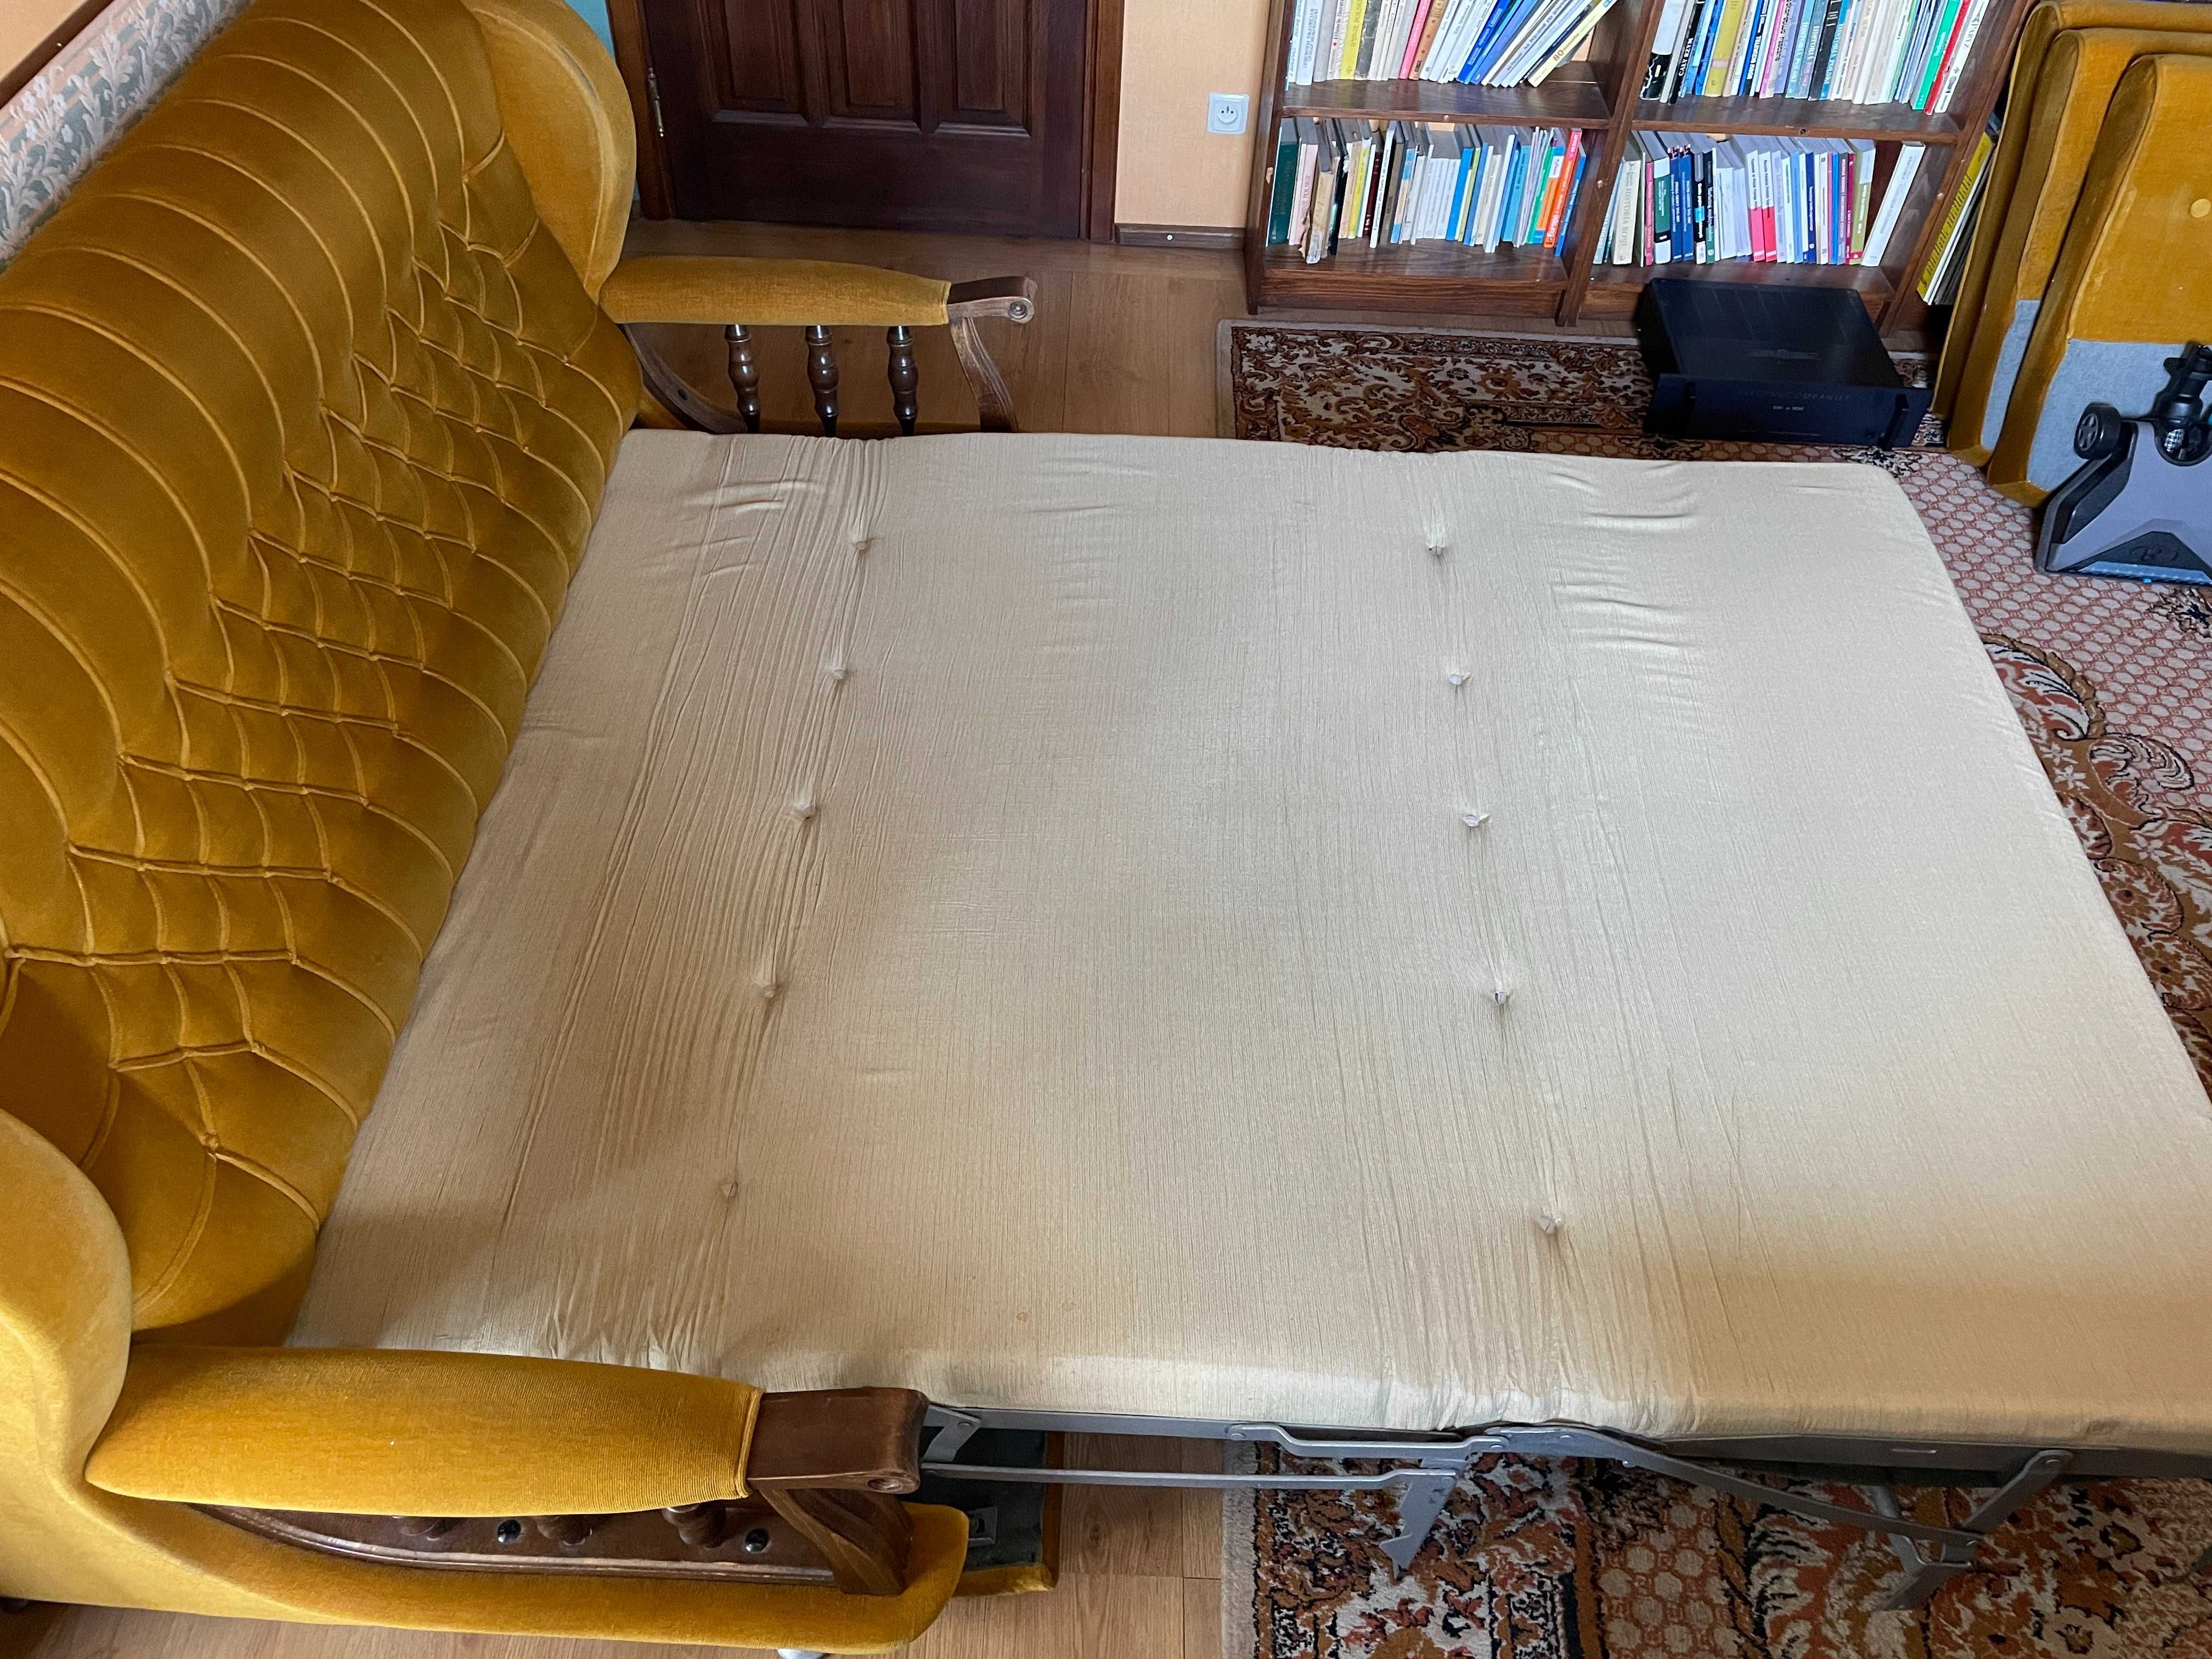 Sofa z funkcją spania kanapa trzyosobowa